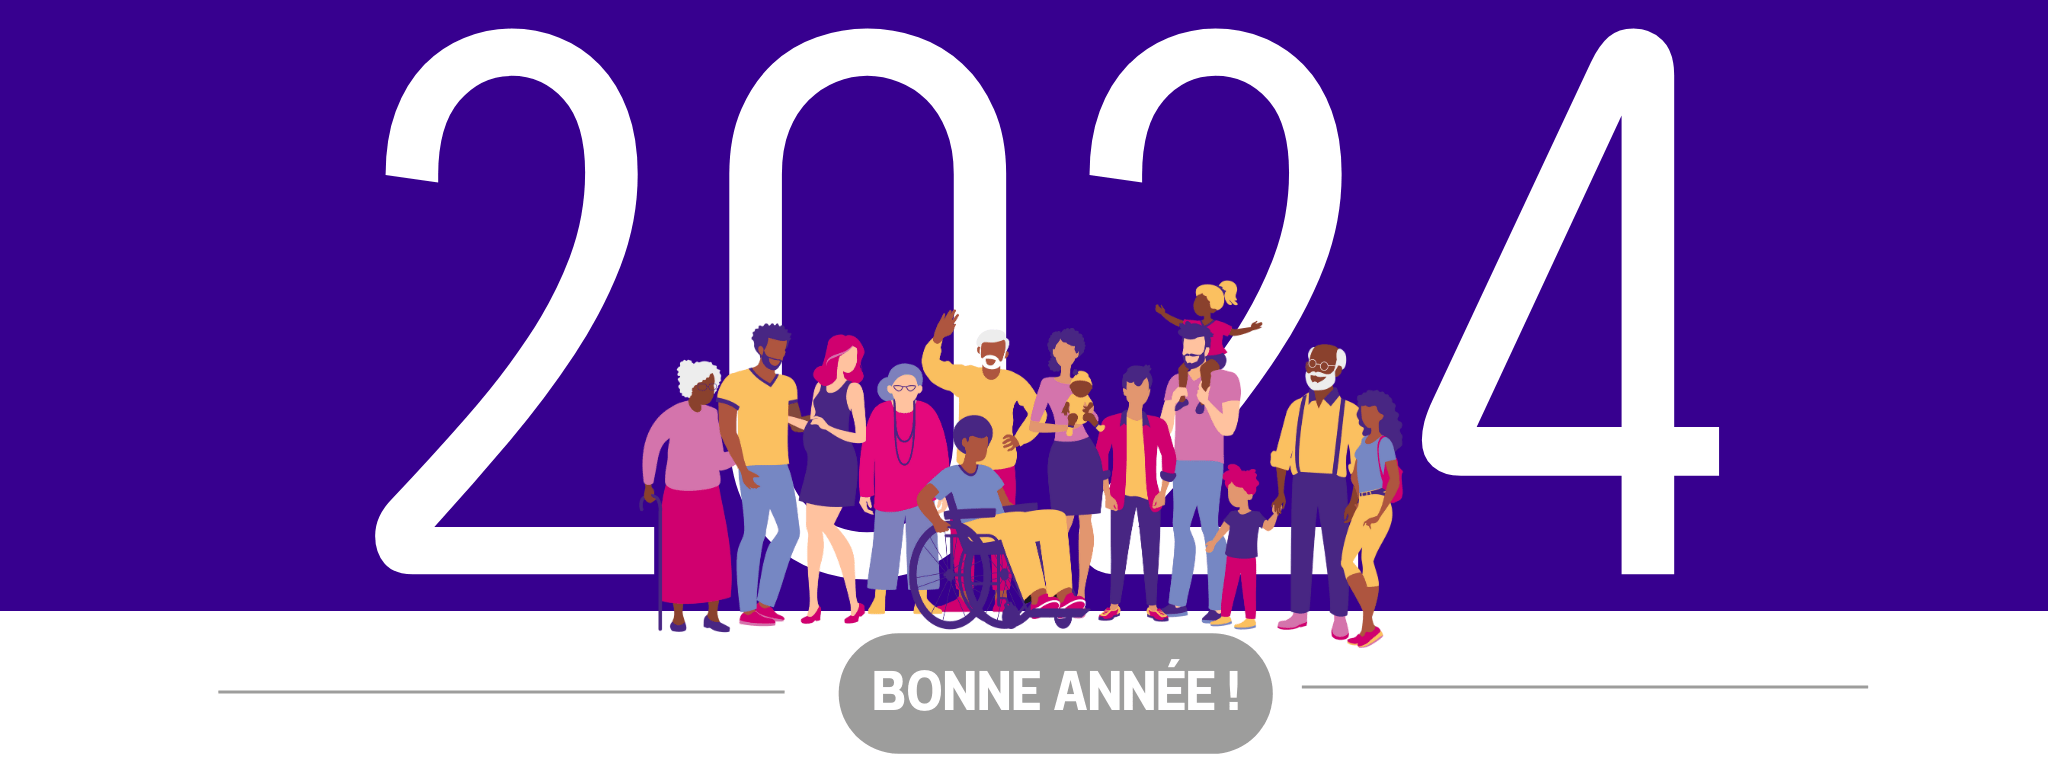 VYV 3 Île-de-France vous adresse ses meilleurs vœux pour cette année 2024 !